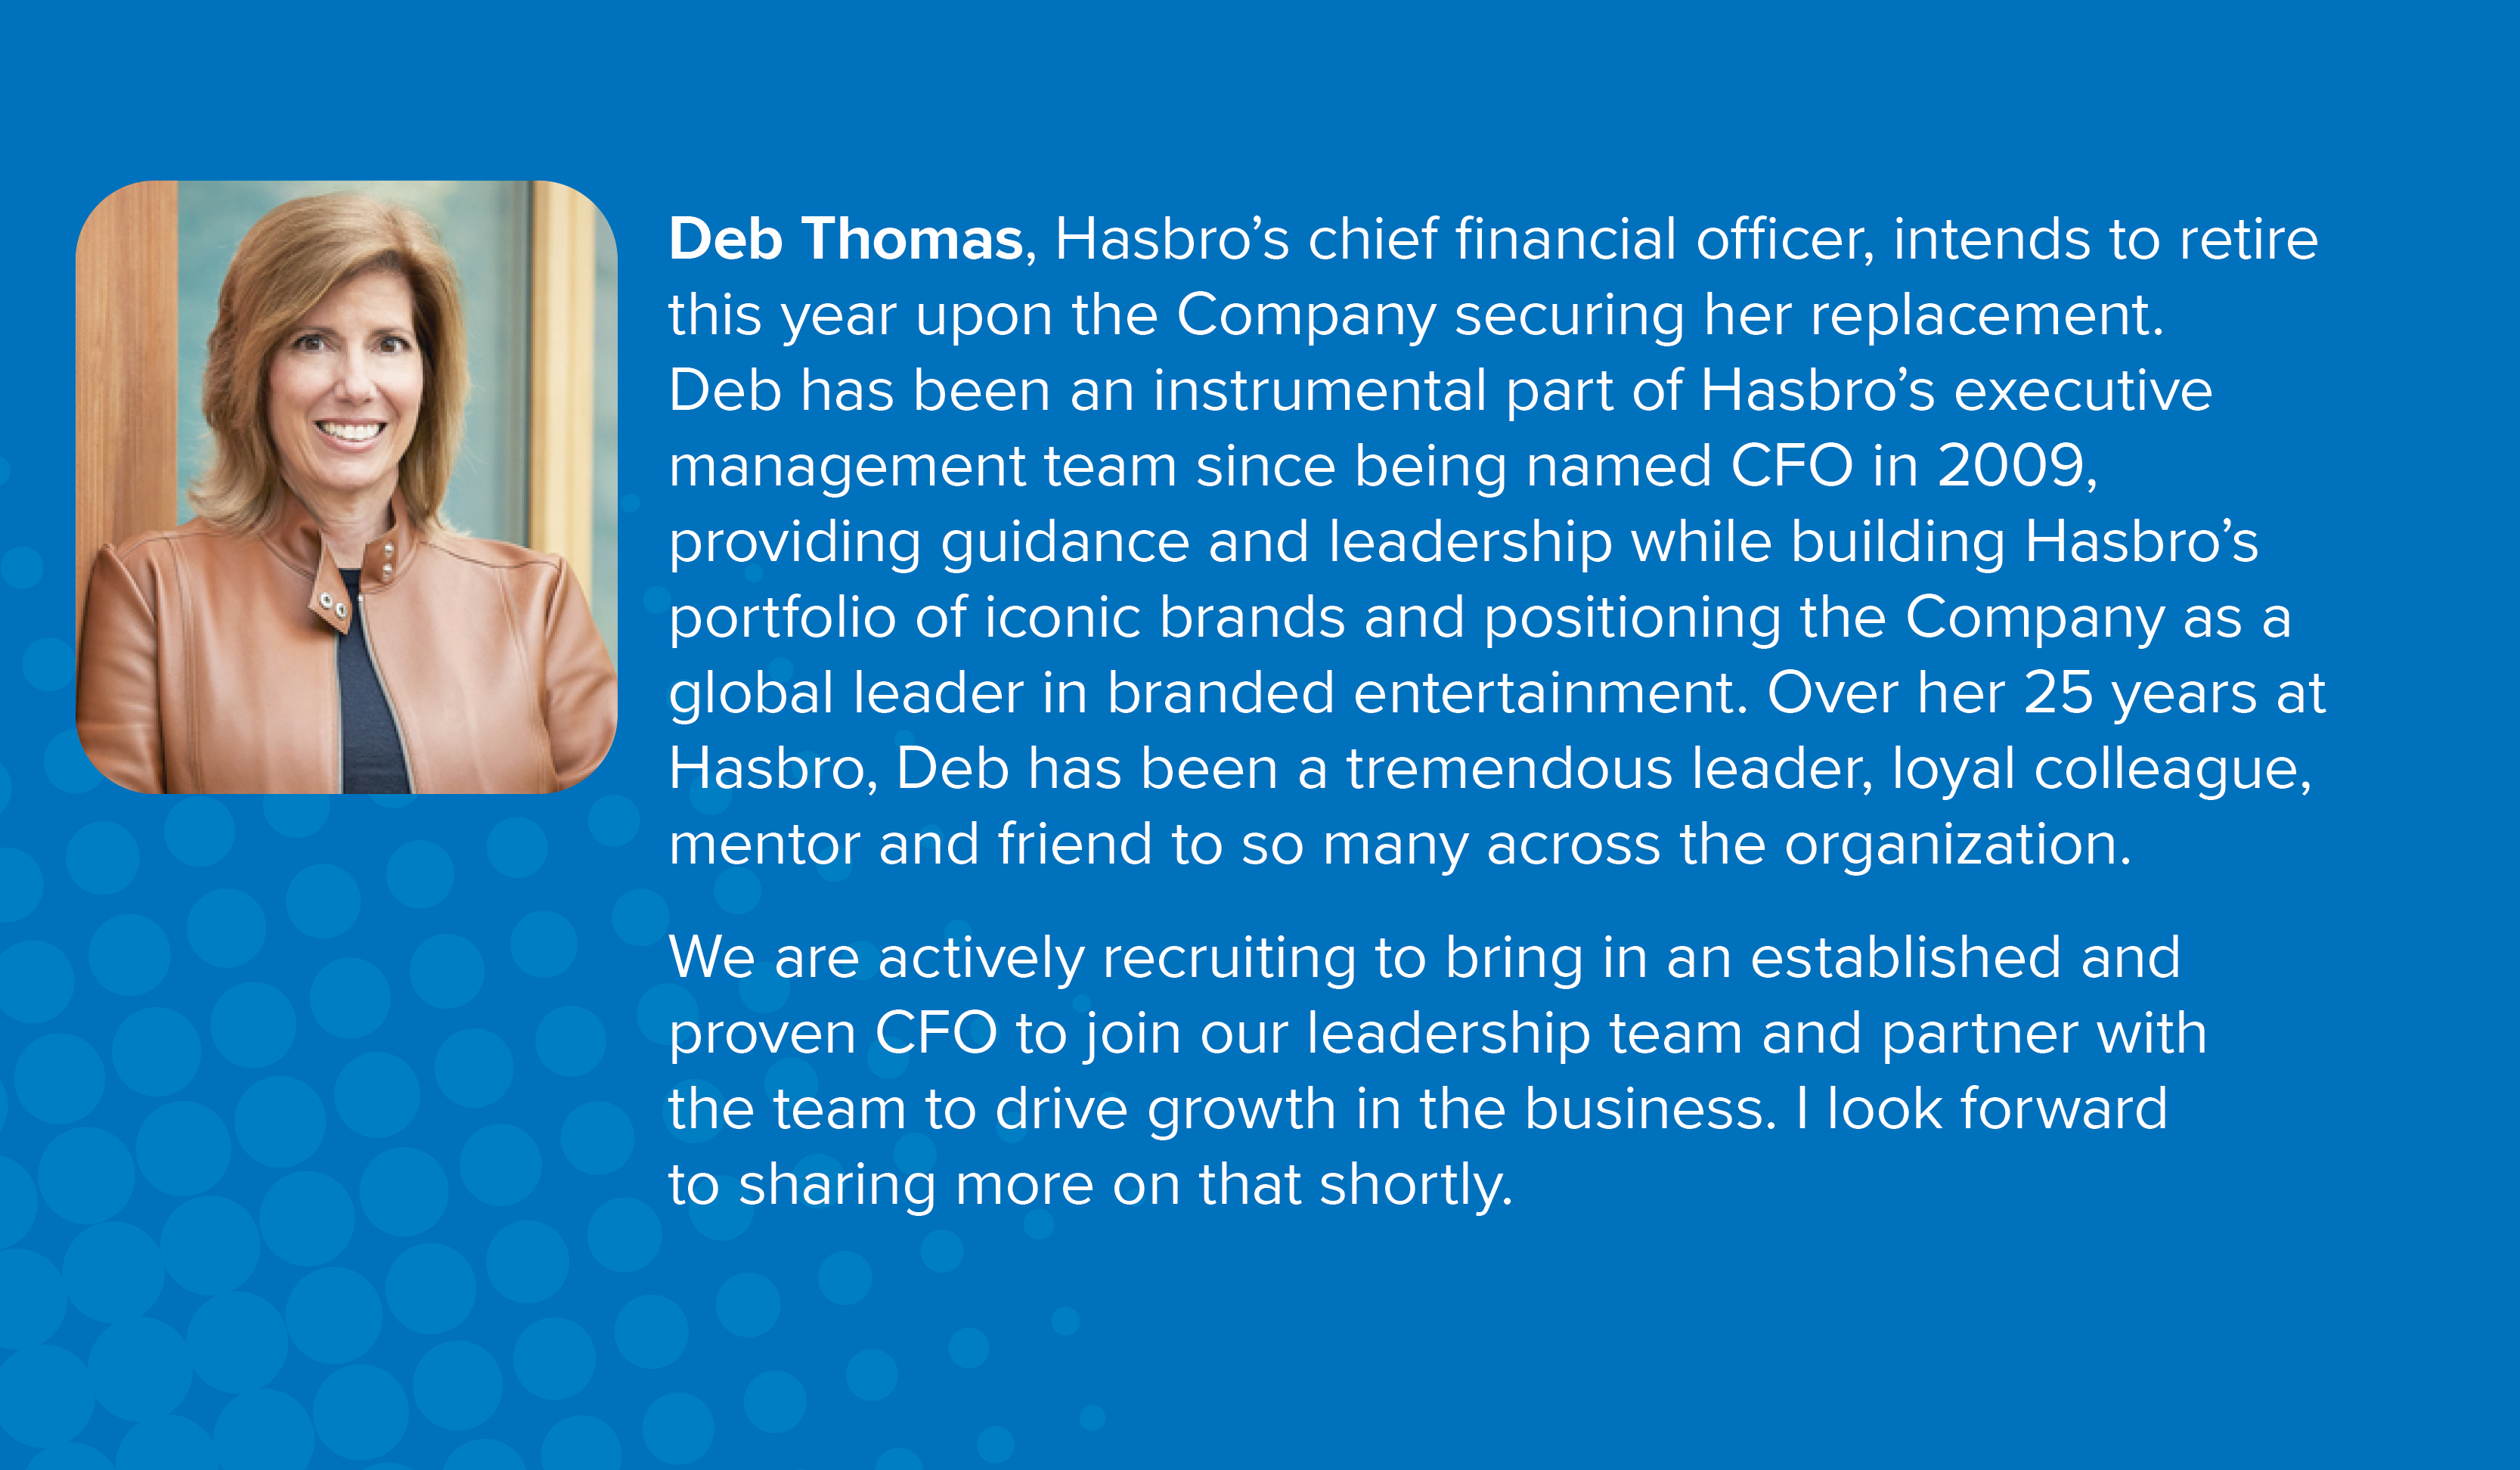 Deb Thomas, CFO